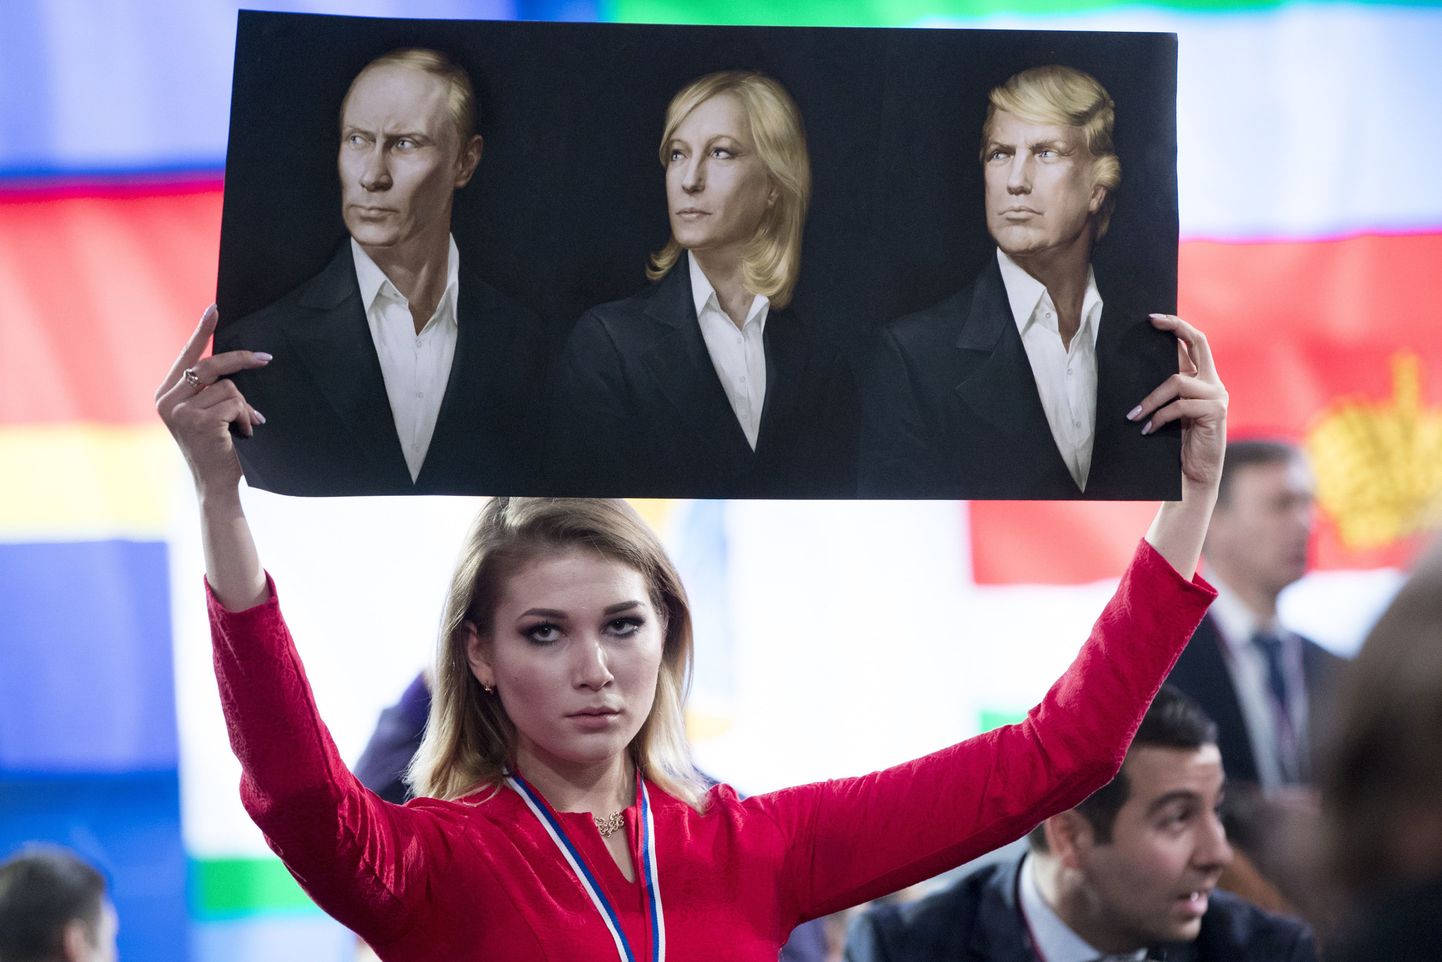 Moskva Putini suure pressikonverentsi eel: triptühhonil seisavad idealiseeritud portreedel reas Vladimir Putin, Marine Le Pen ja Donald Trump.